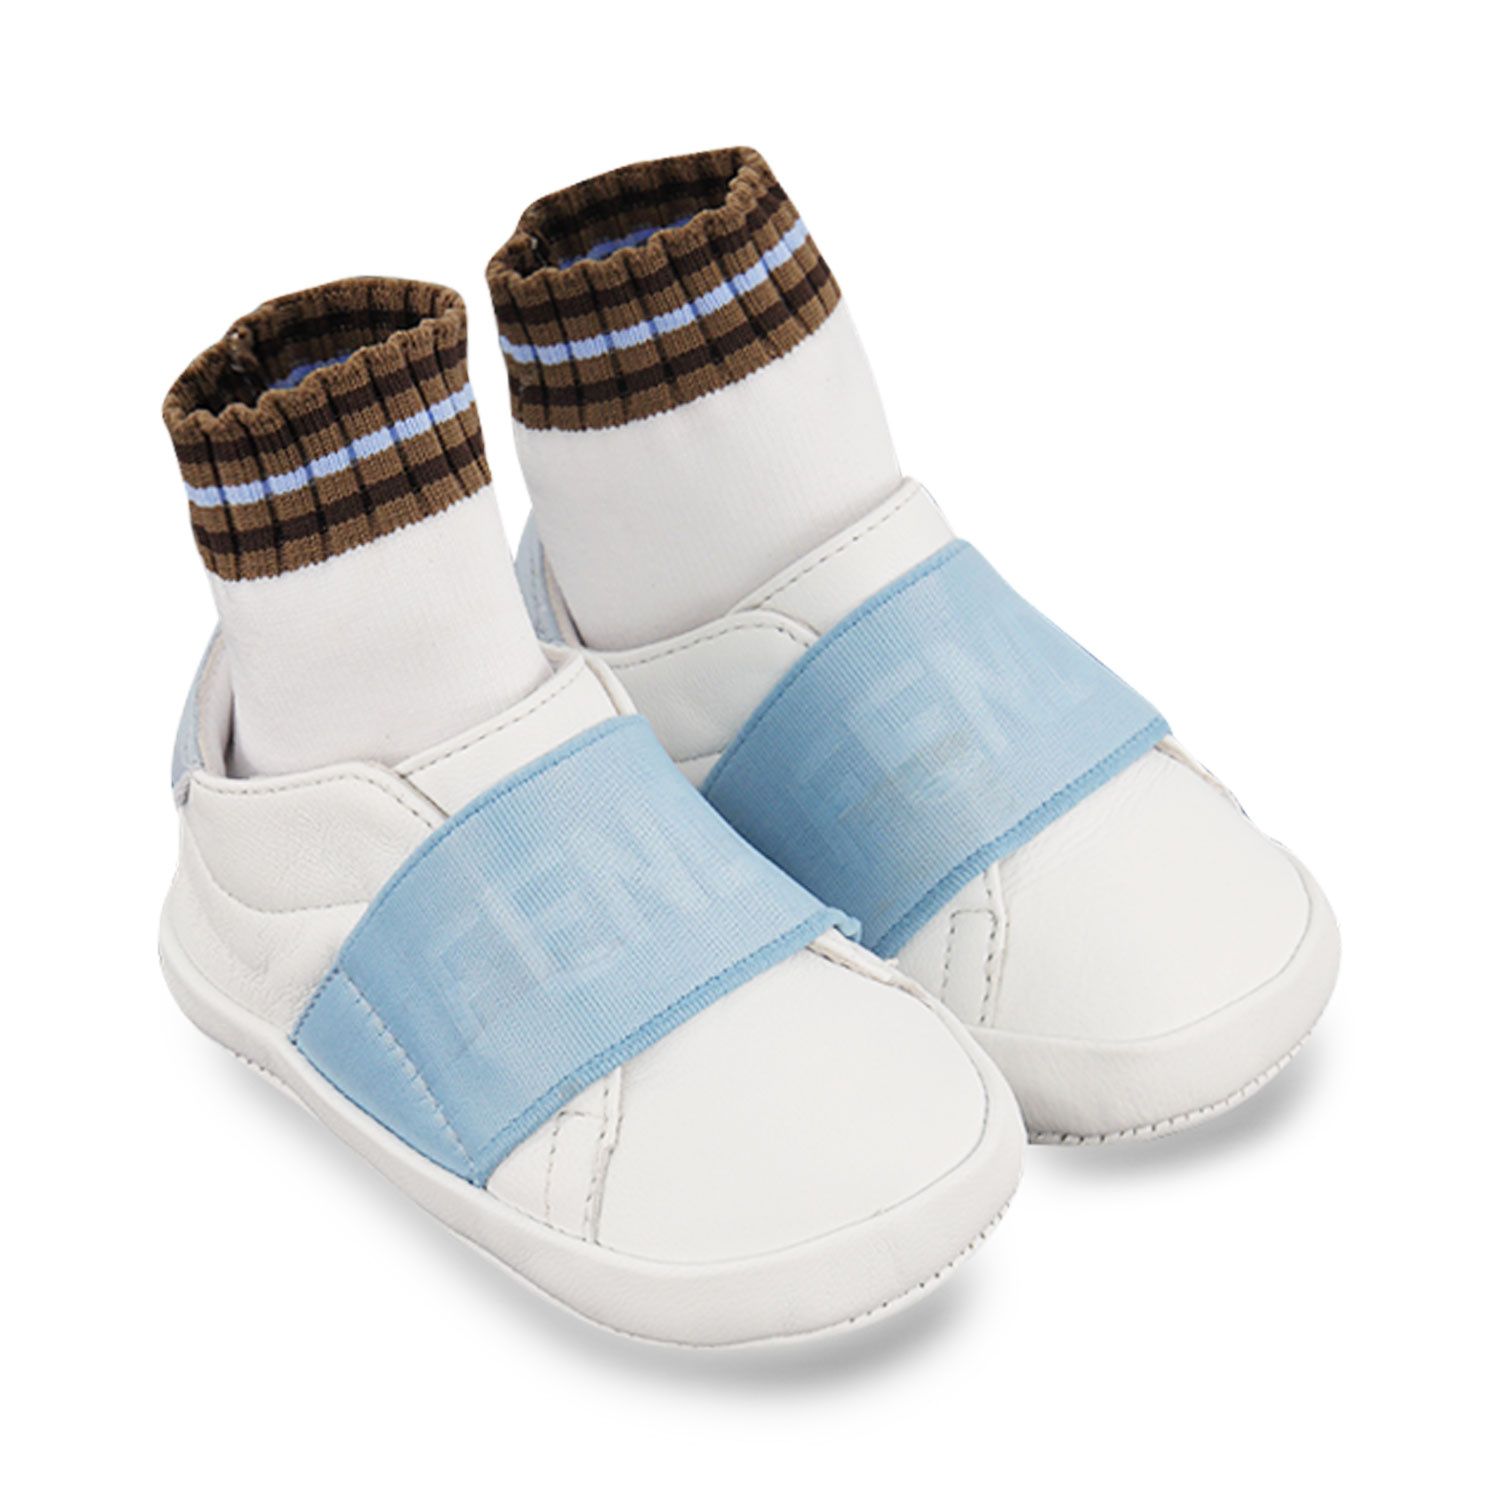 Afbeelding van Fendi BUR088 AGCD babyschoenen licht blauw/wit